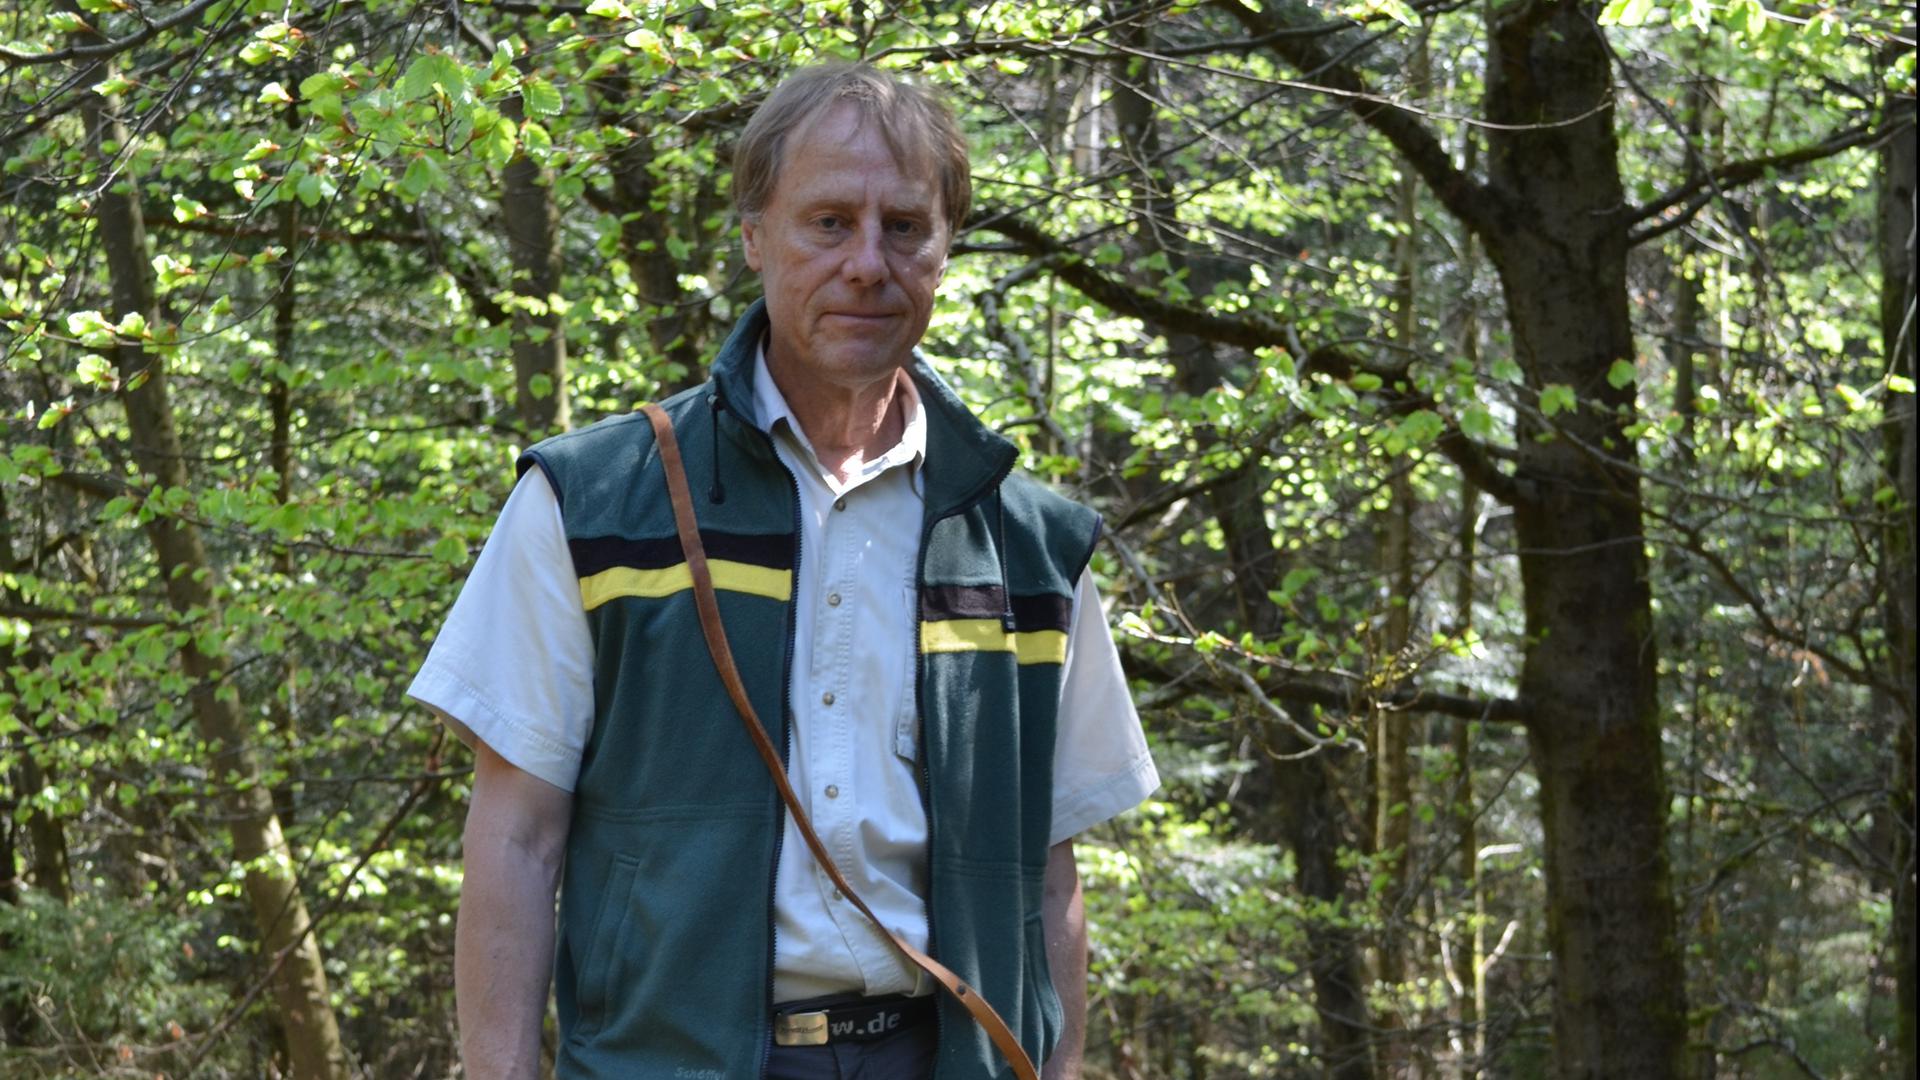 Bernhard Brenneis ist der Wildtierbeauftragte im Enzkreis und kümmert sich nicht nur um Wölfe, sondern auch um Luchse, Rebhühner und Schnepfen.